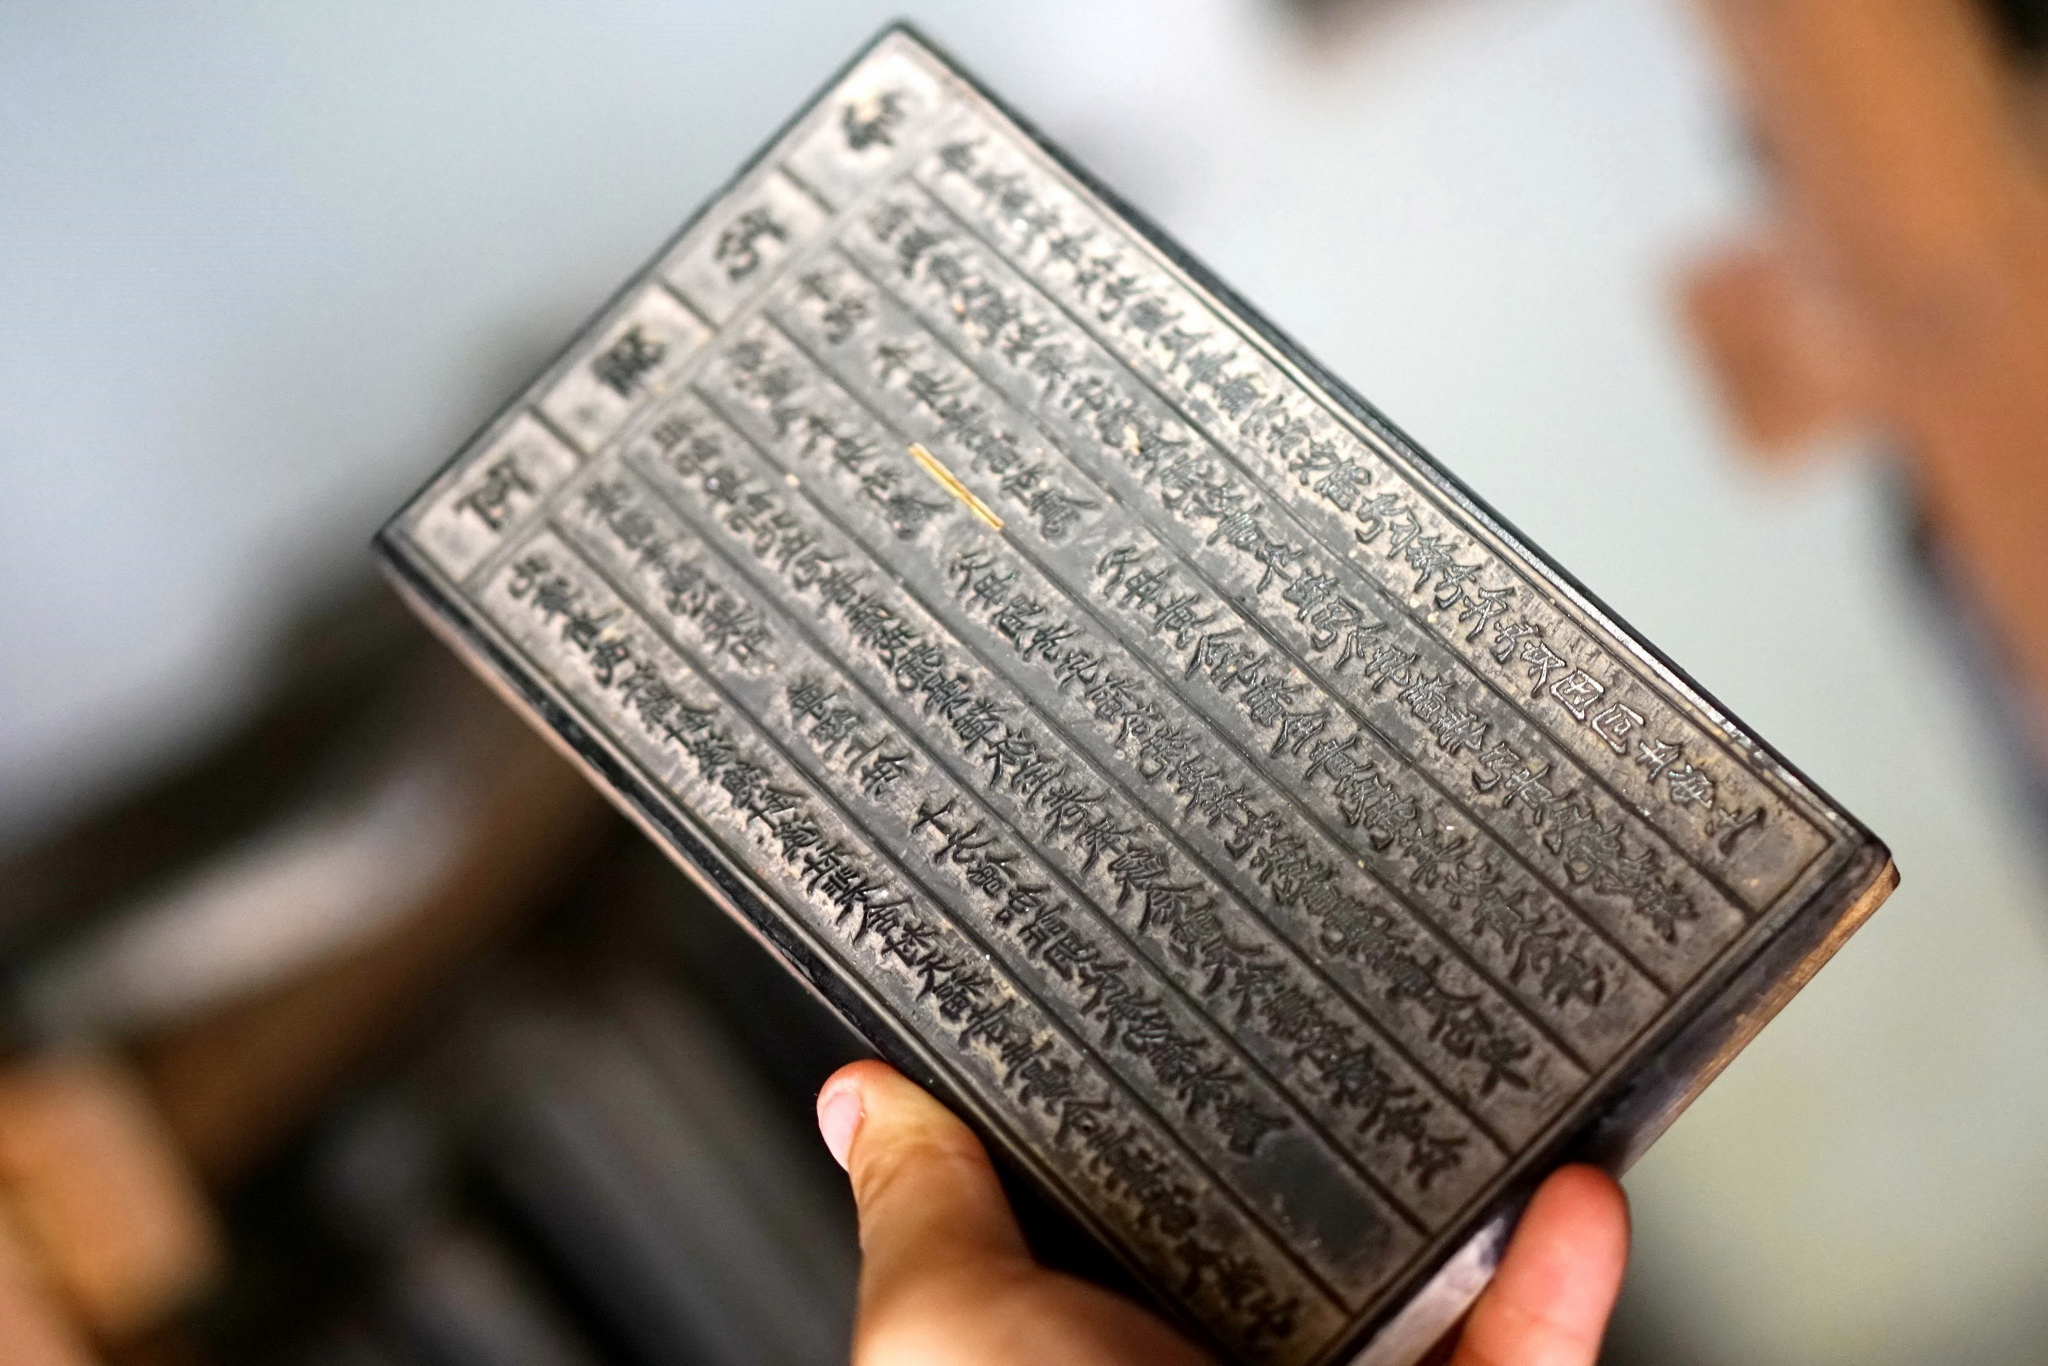 Tấm mộc bản lớn nhất có khổ 150x30x2,5cm tại chùa Bổ Đà. (Ảnh: TTXVN)